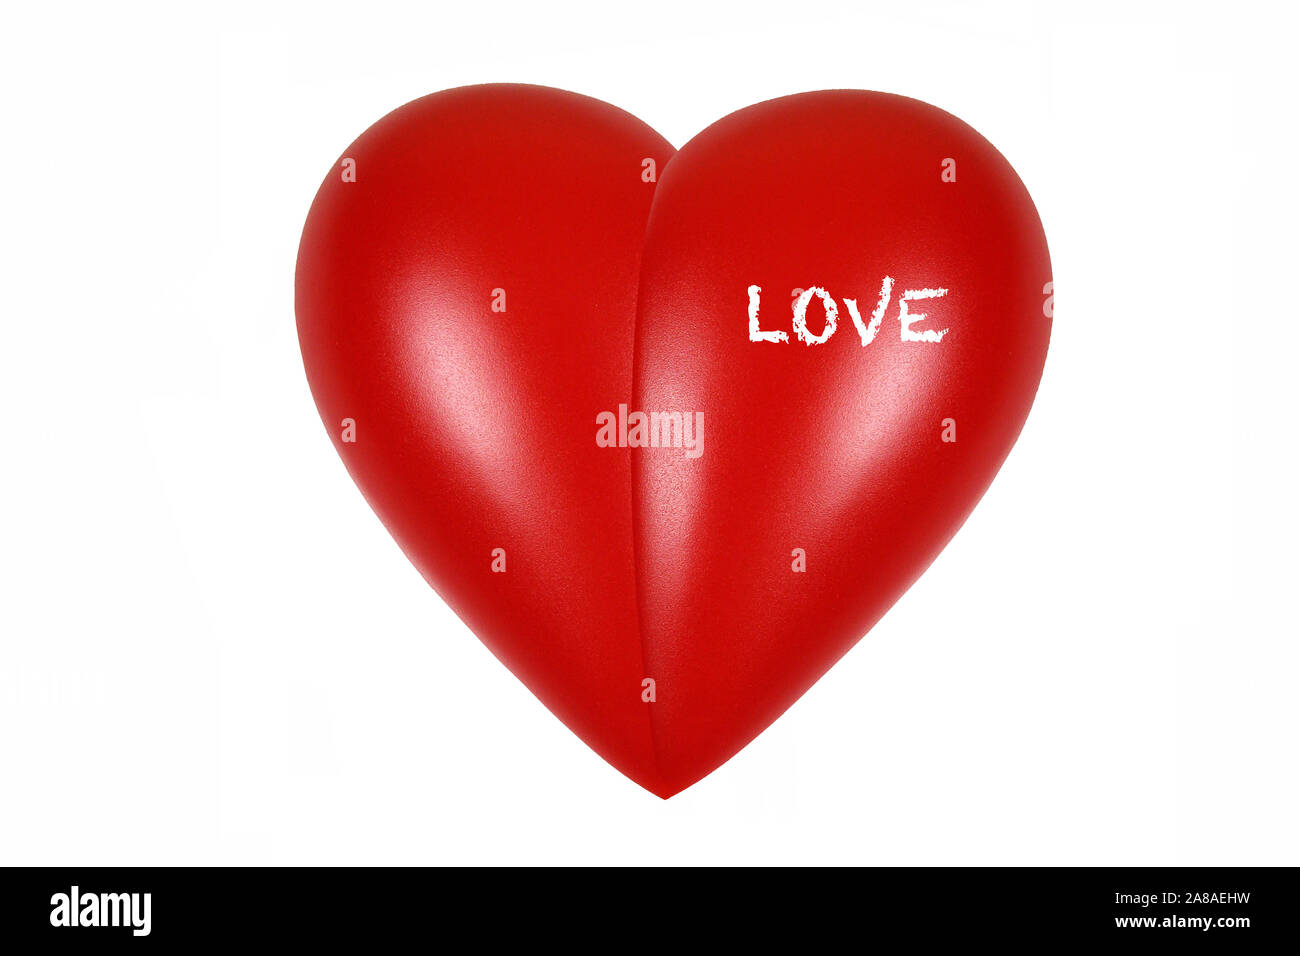 Rotes Herz, Organ, Gesundheit, Körperteil, Love, Stock Photo